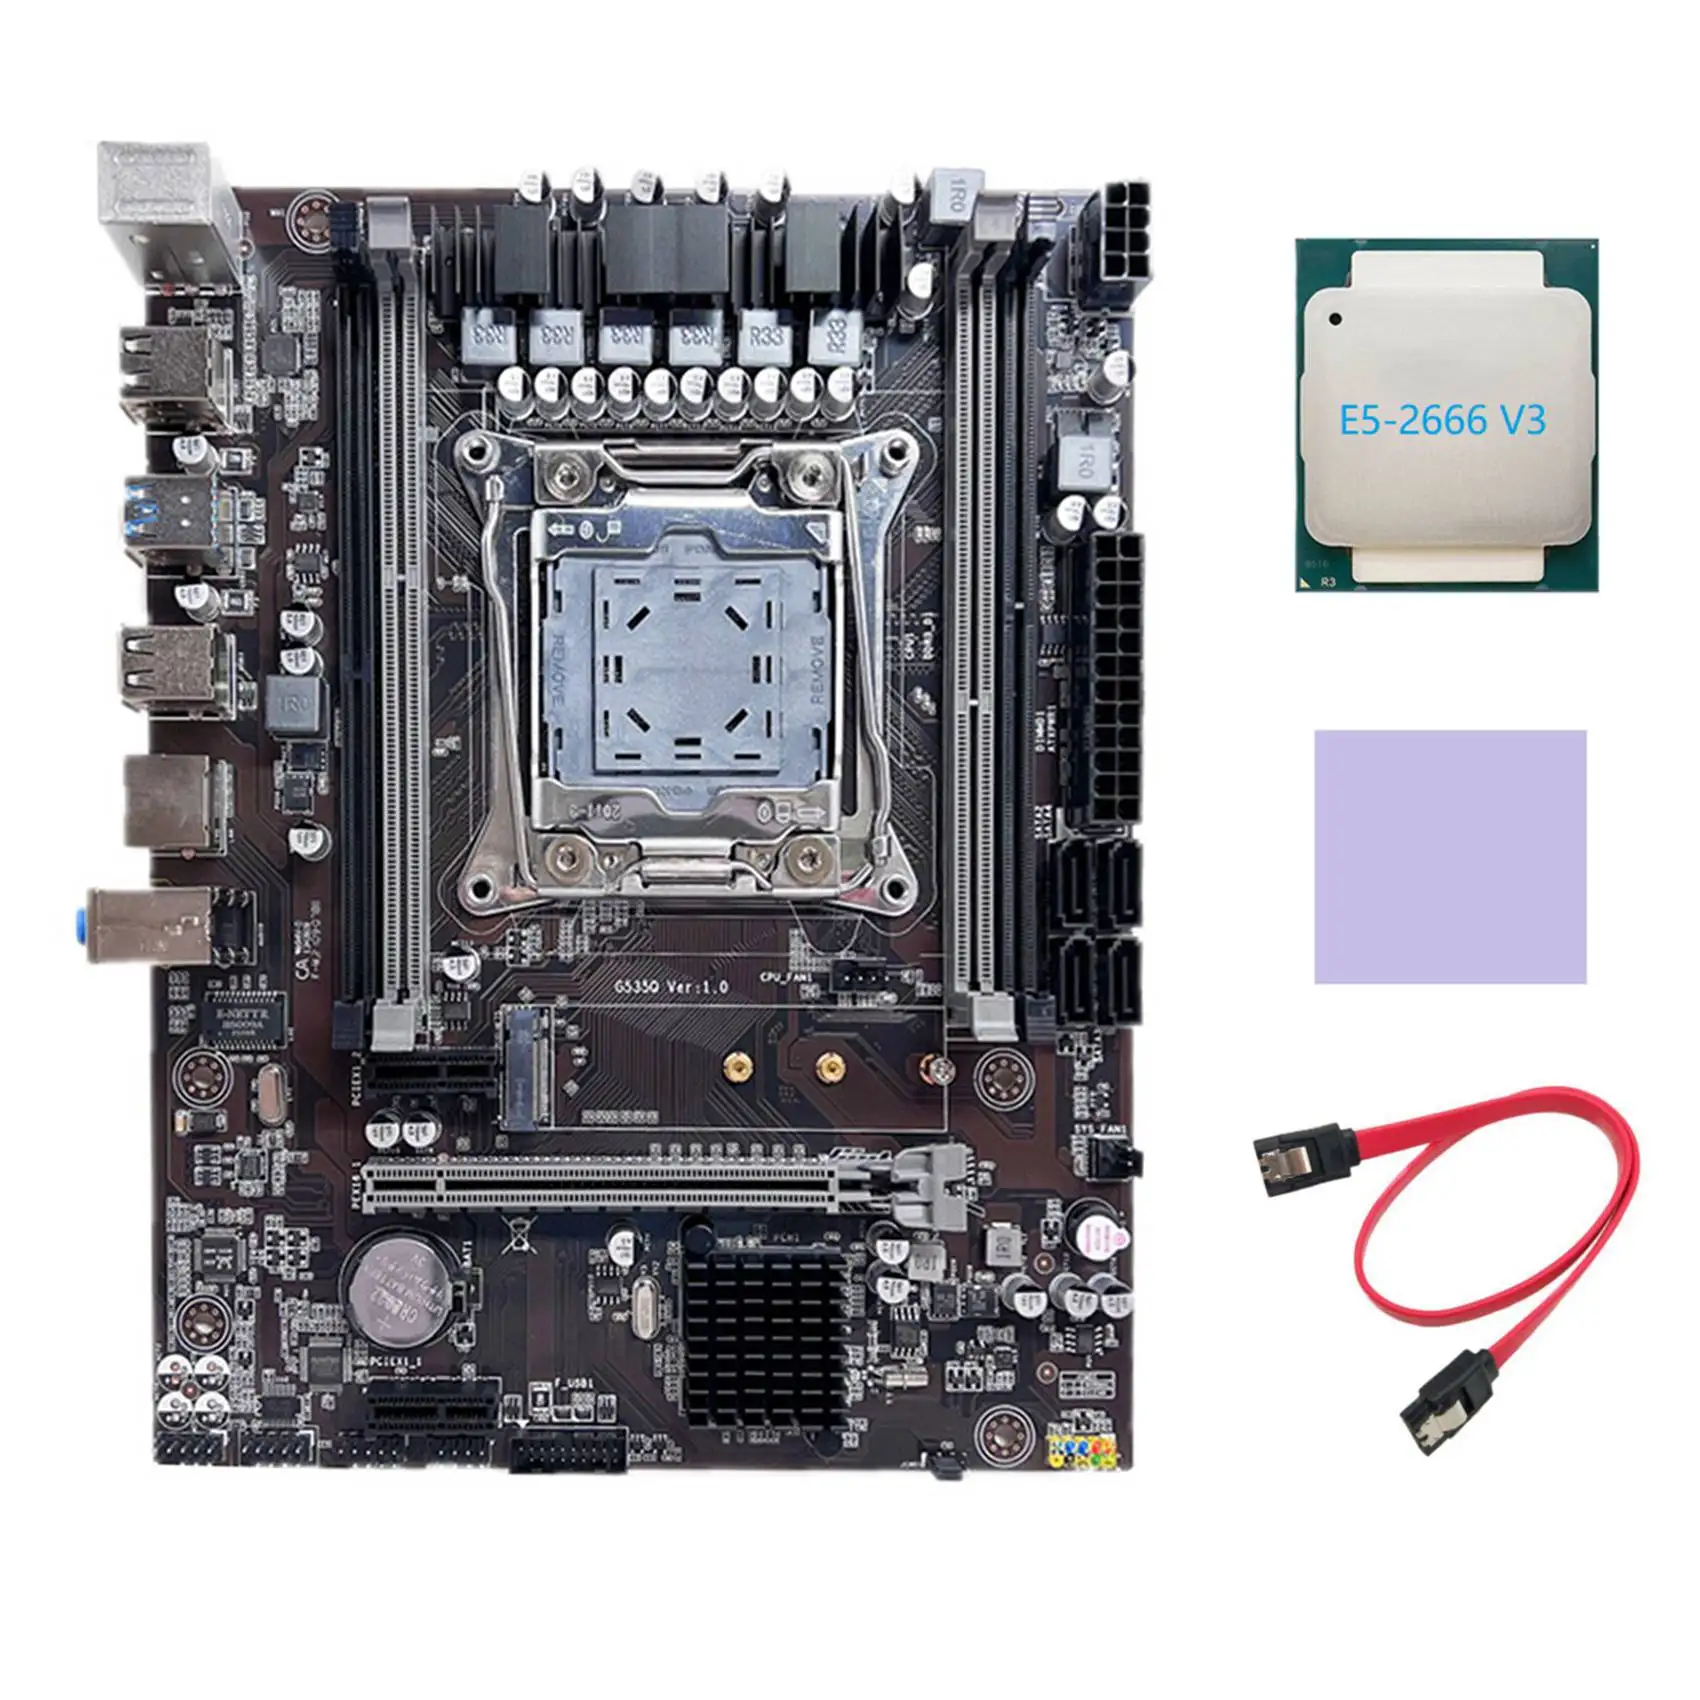 

Материнская плата X99, материнская плата для компьютера, поддерживает Память DDR4 ECC с процессором E5 2666 V3 + кабель SATA + термоподушка